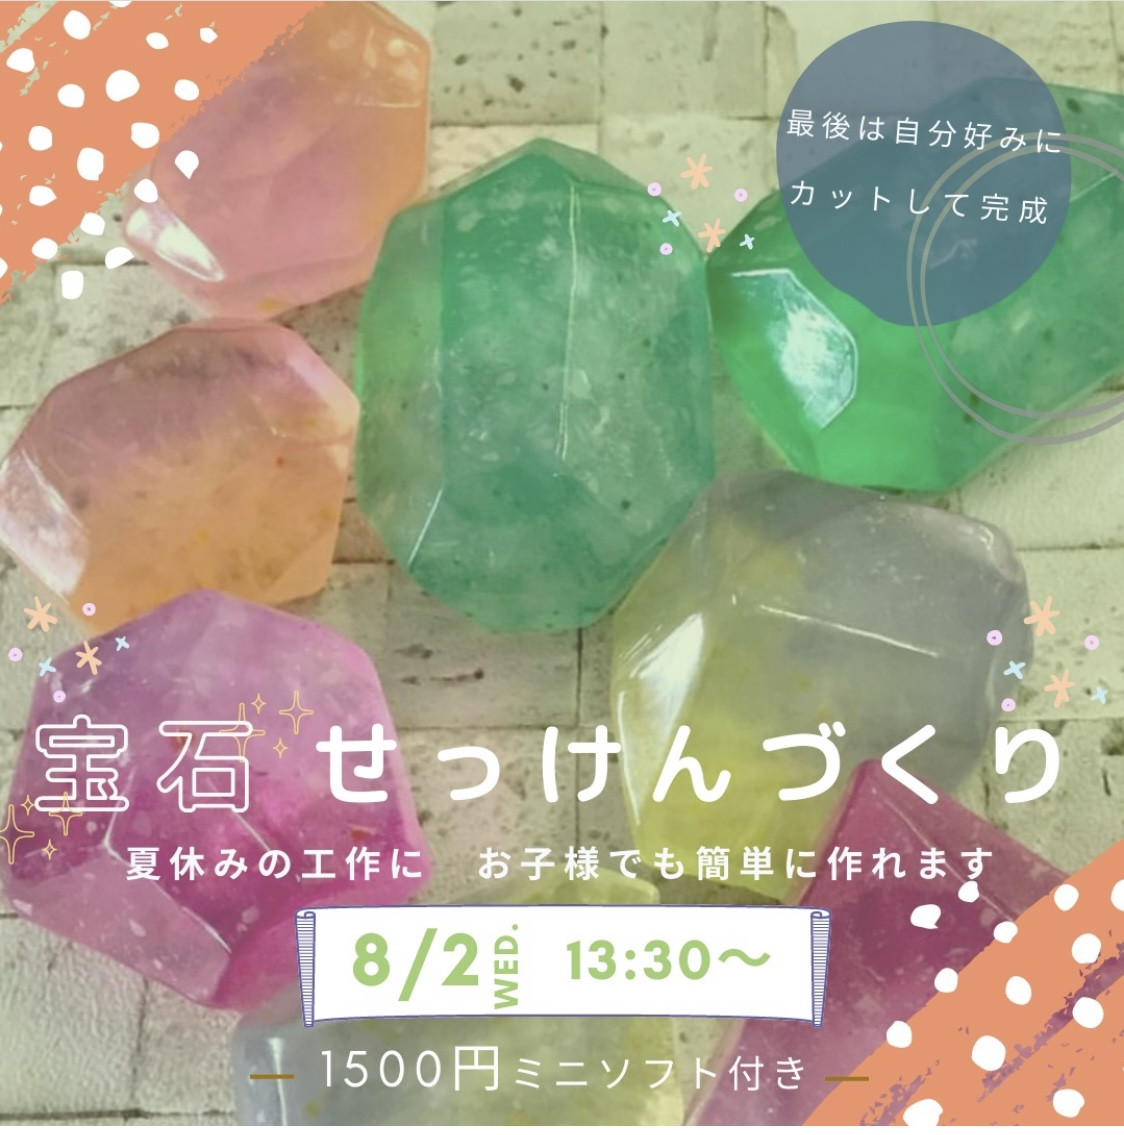 虎屋本舗神辺店さまで「夏休み宝石せっけんづくり」ワークショップ開催します。